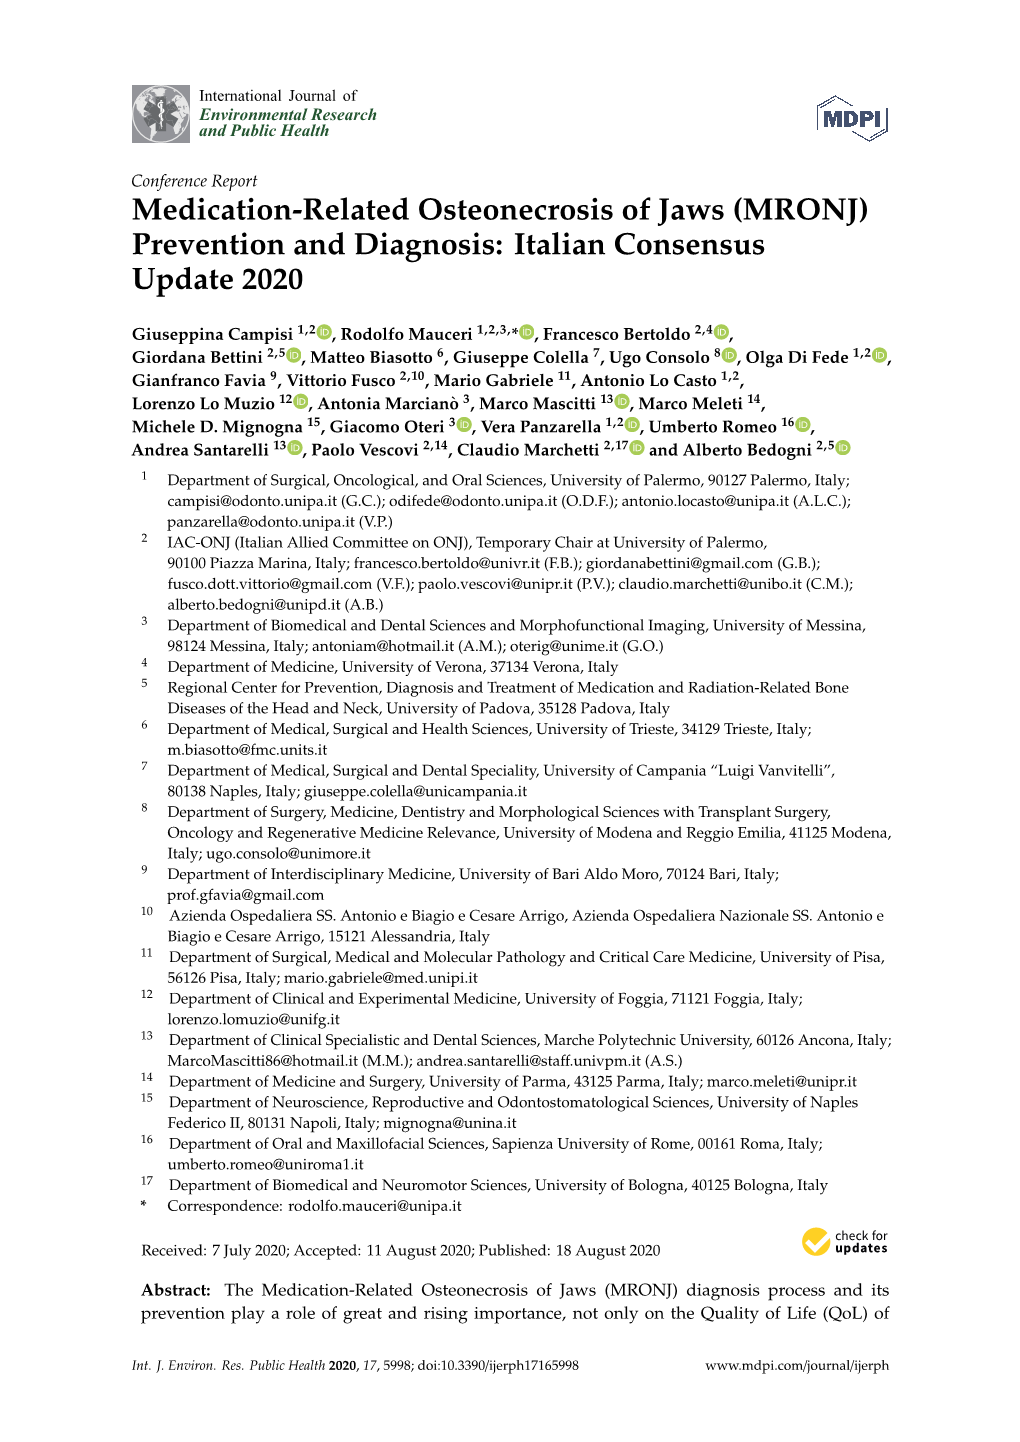 (MRONJ) Prevention and Diagnosis: Italian Consensus Update 2020